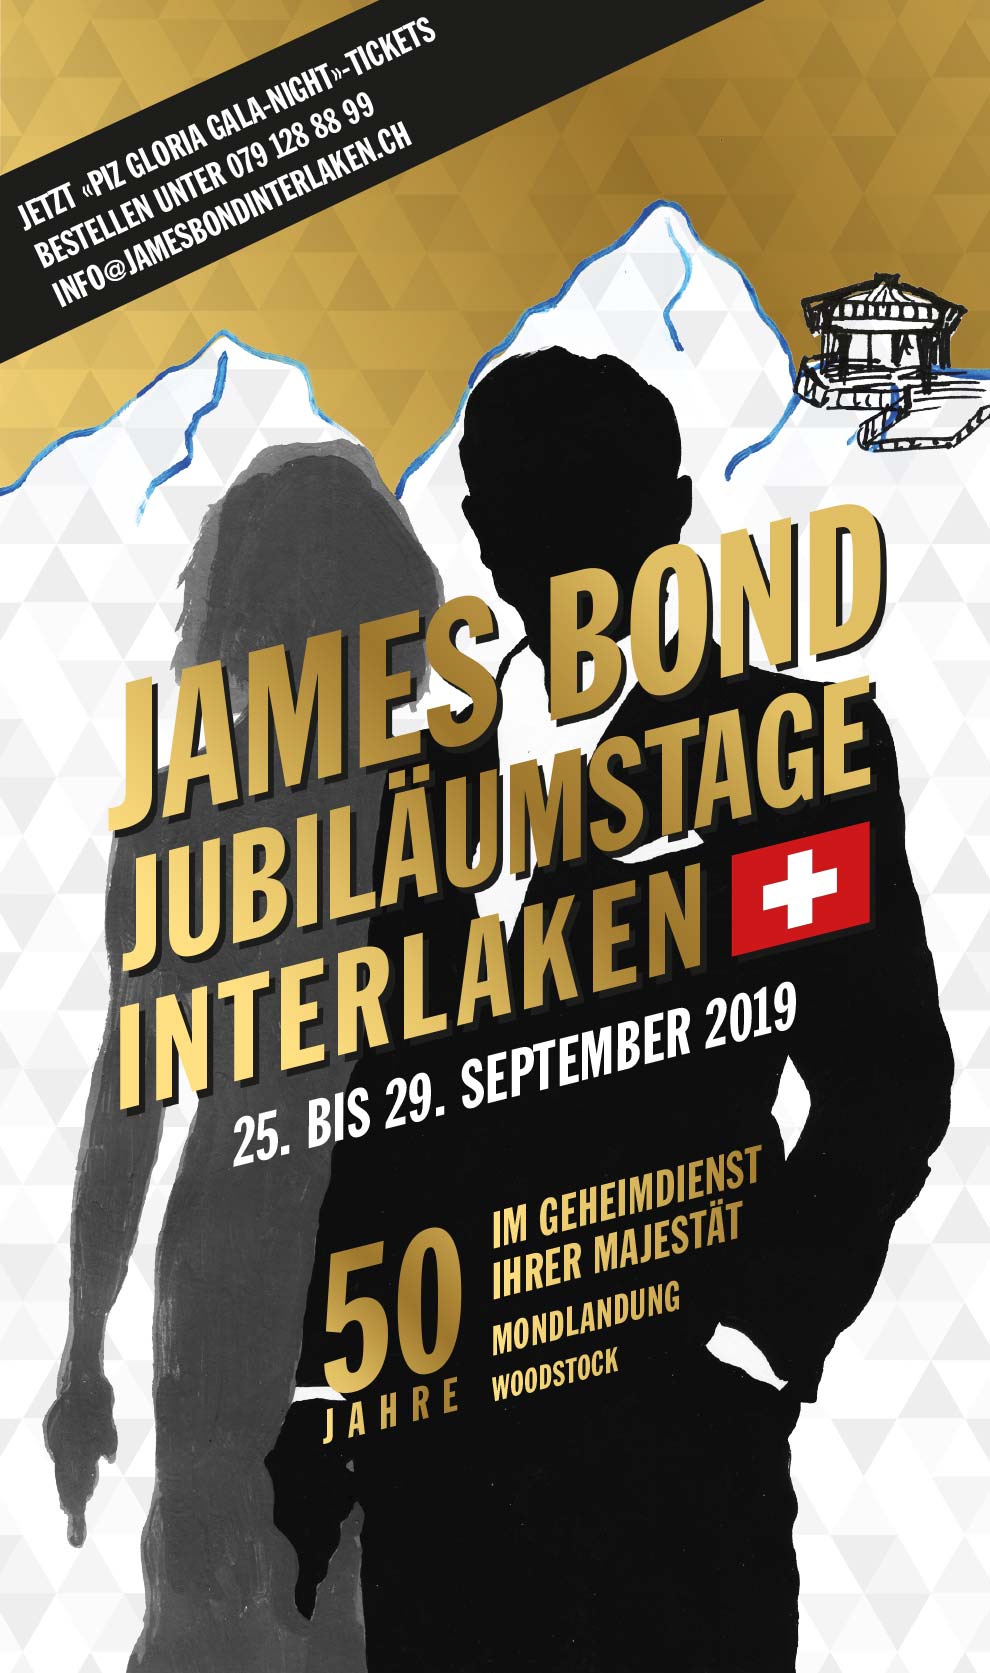 JAMES BOND JUBILÄUMSTAGE INTERLAKEN / 25. BIS 29. SEPTEMBER 2019